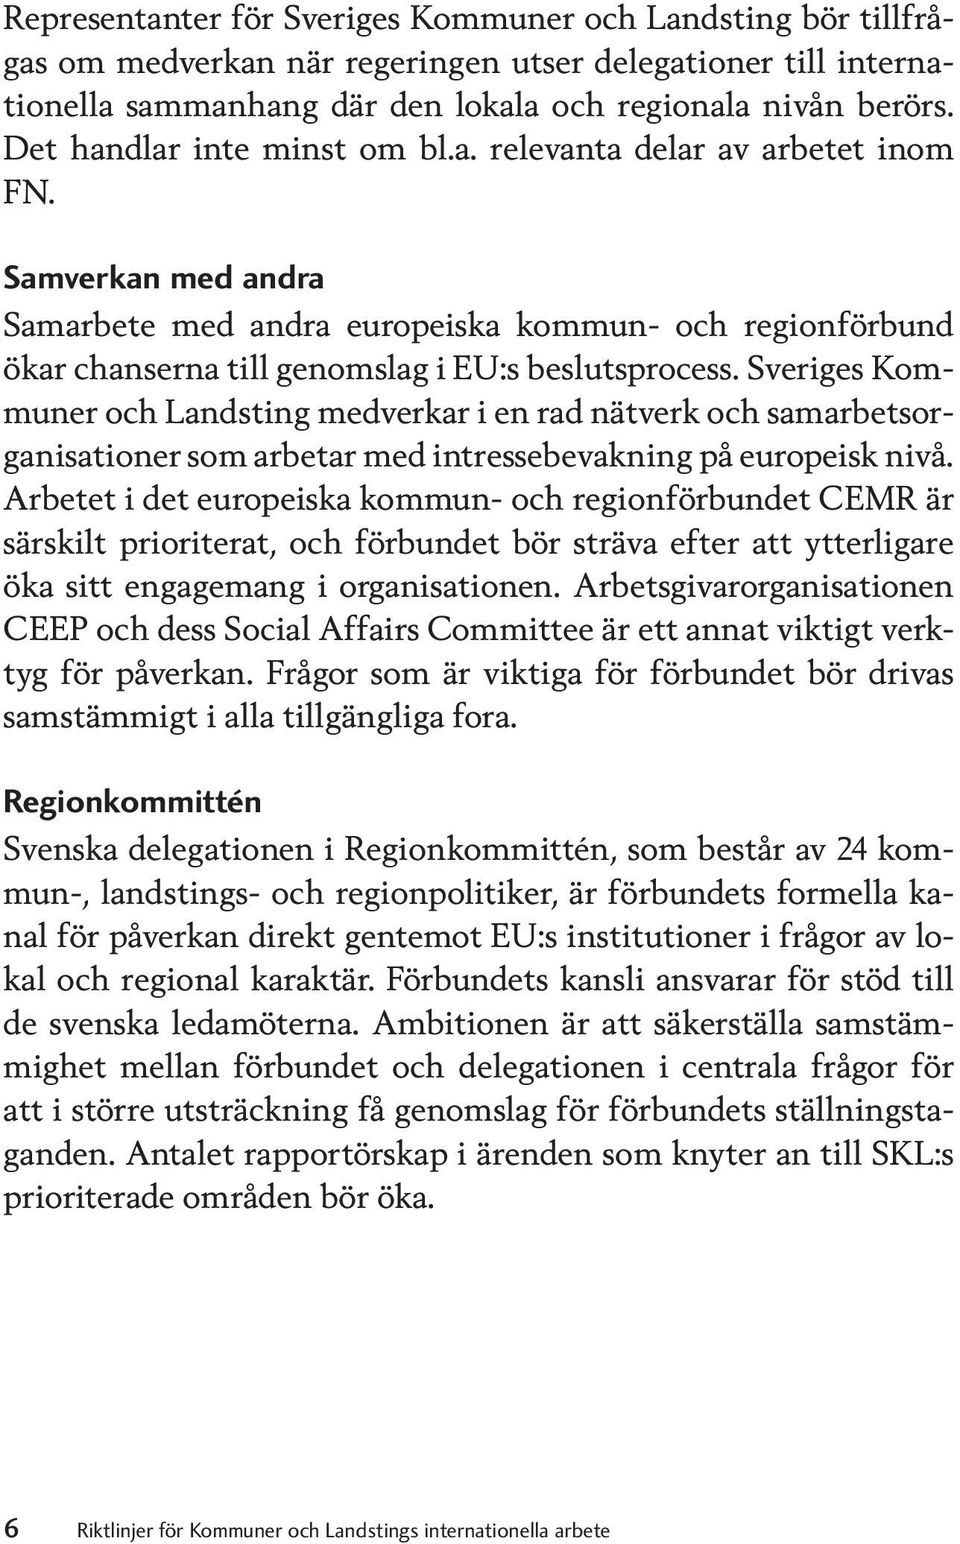 Sveriges Kommuner och Landsting medverkar i en rad nätverk och samarbetsorganisationer som arbetar med intressebevakning på europeisk nivå.